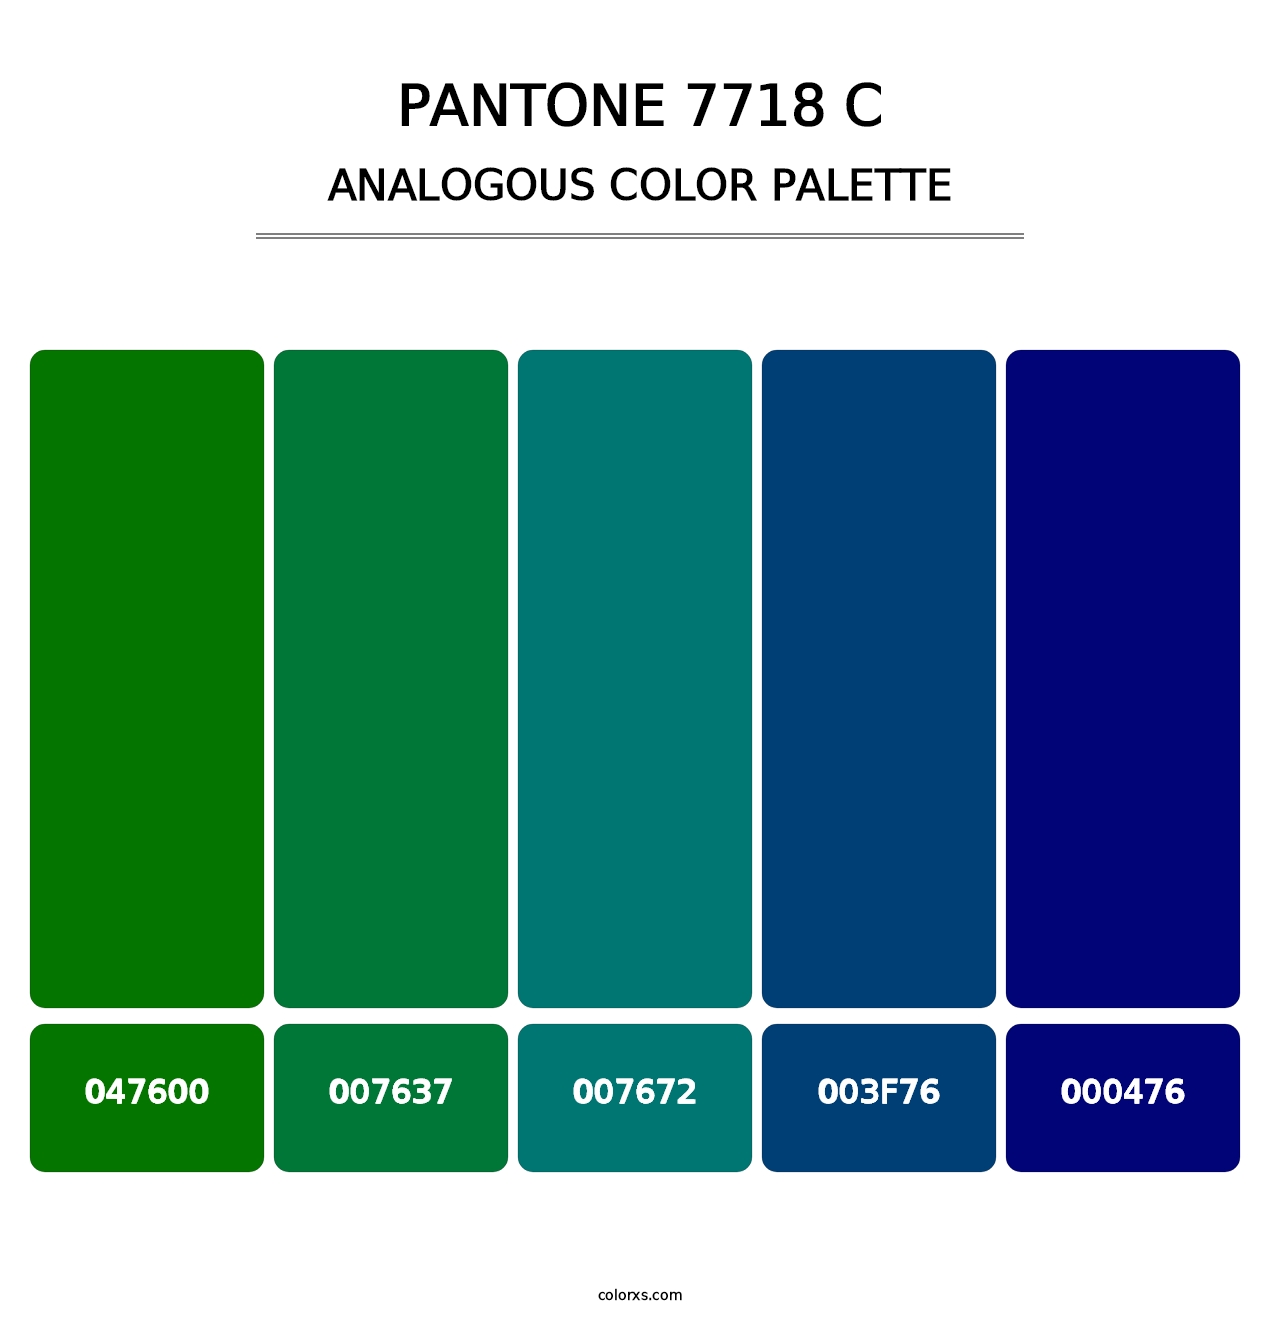 PANTONE 7718 C - Analogous Color Palette